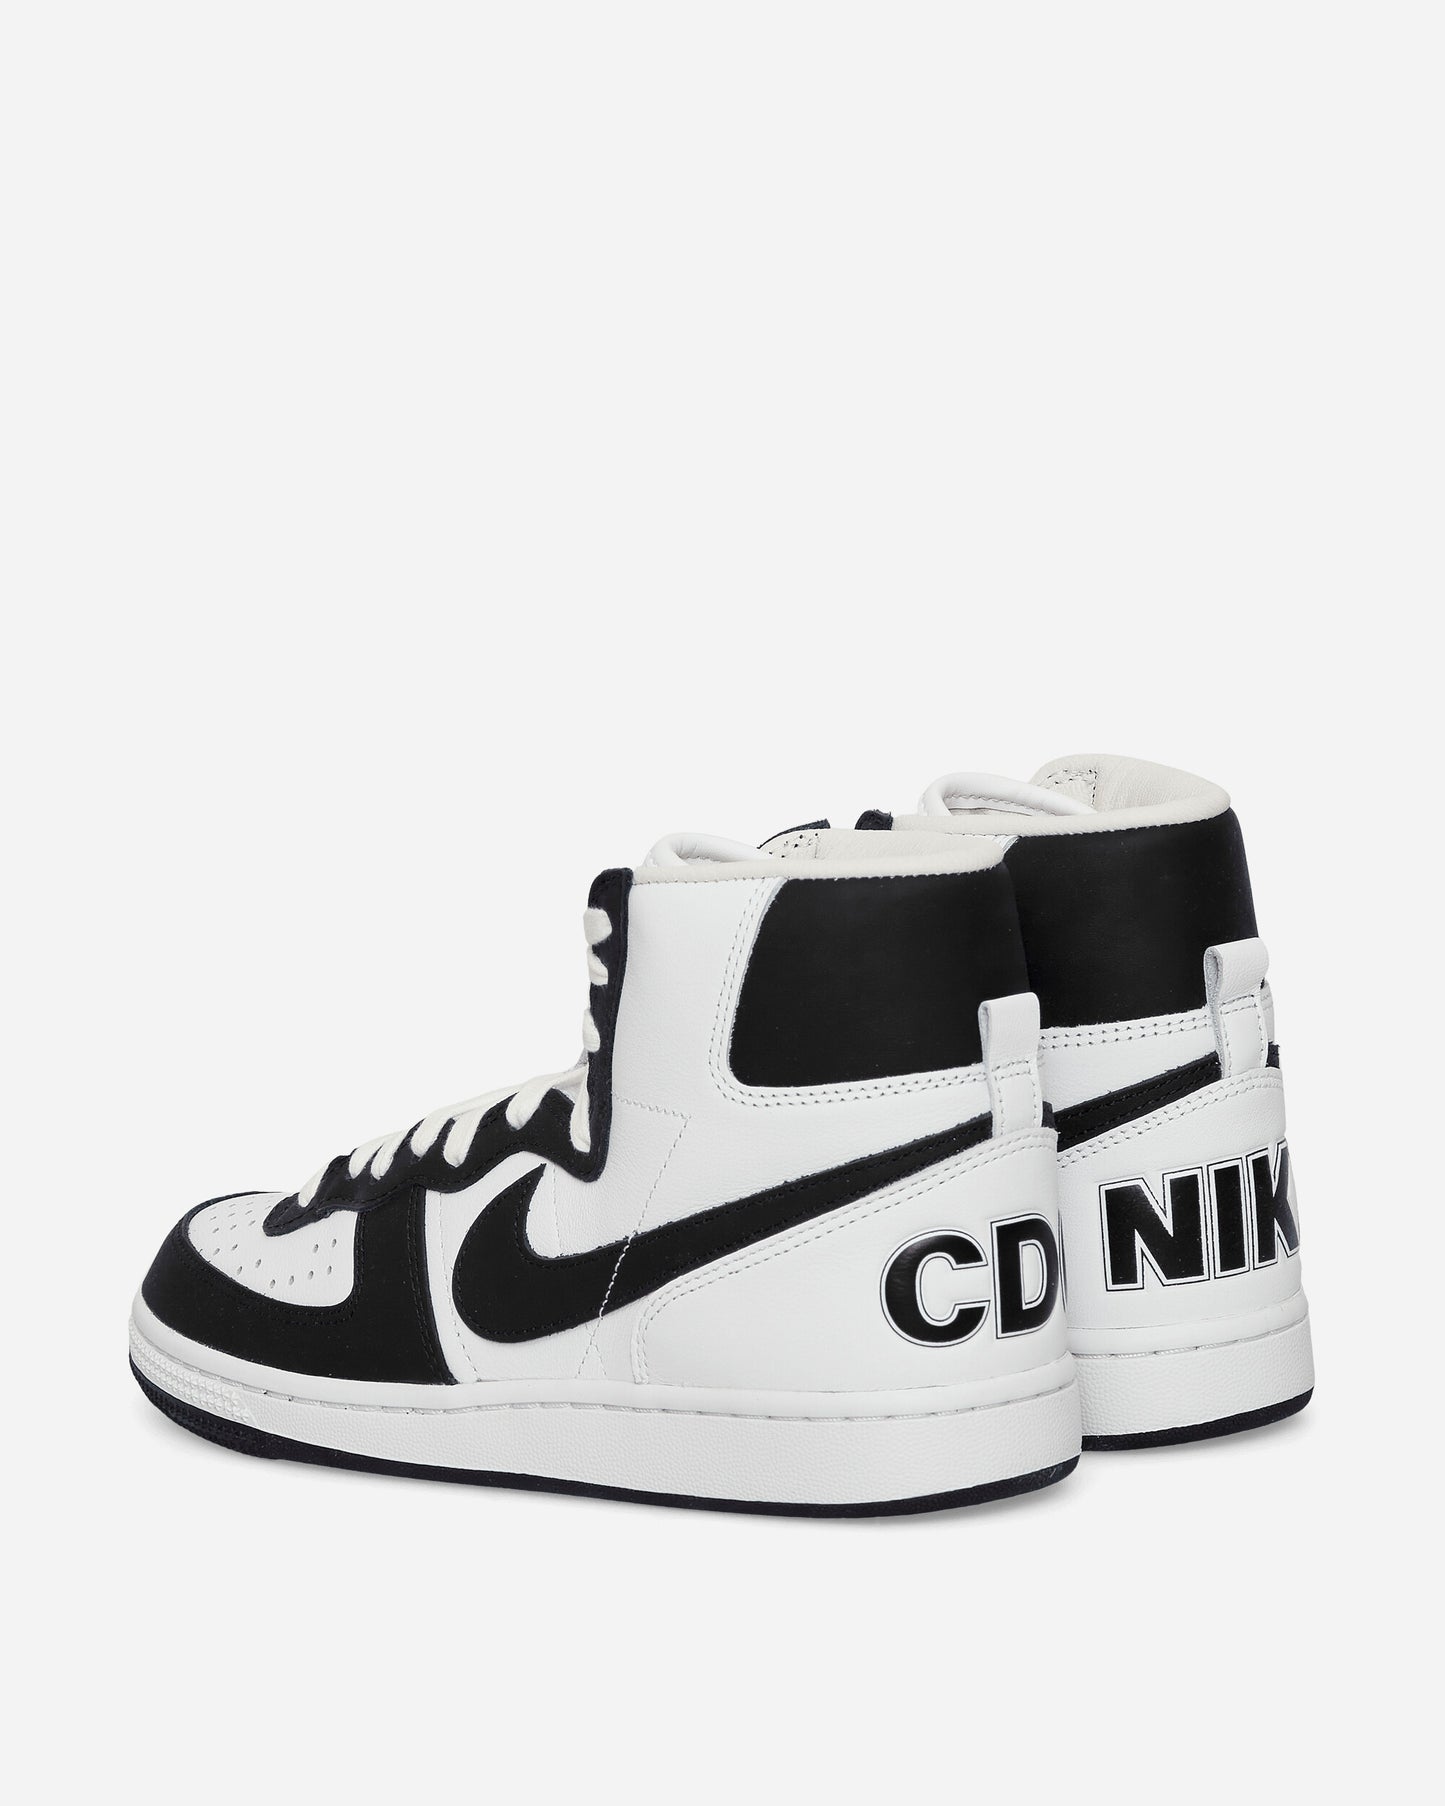 Comme Des Garçons Homme Plus Mens Shoes X Nike Terminator Black Sneakers High PK-K105-S23 1